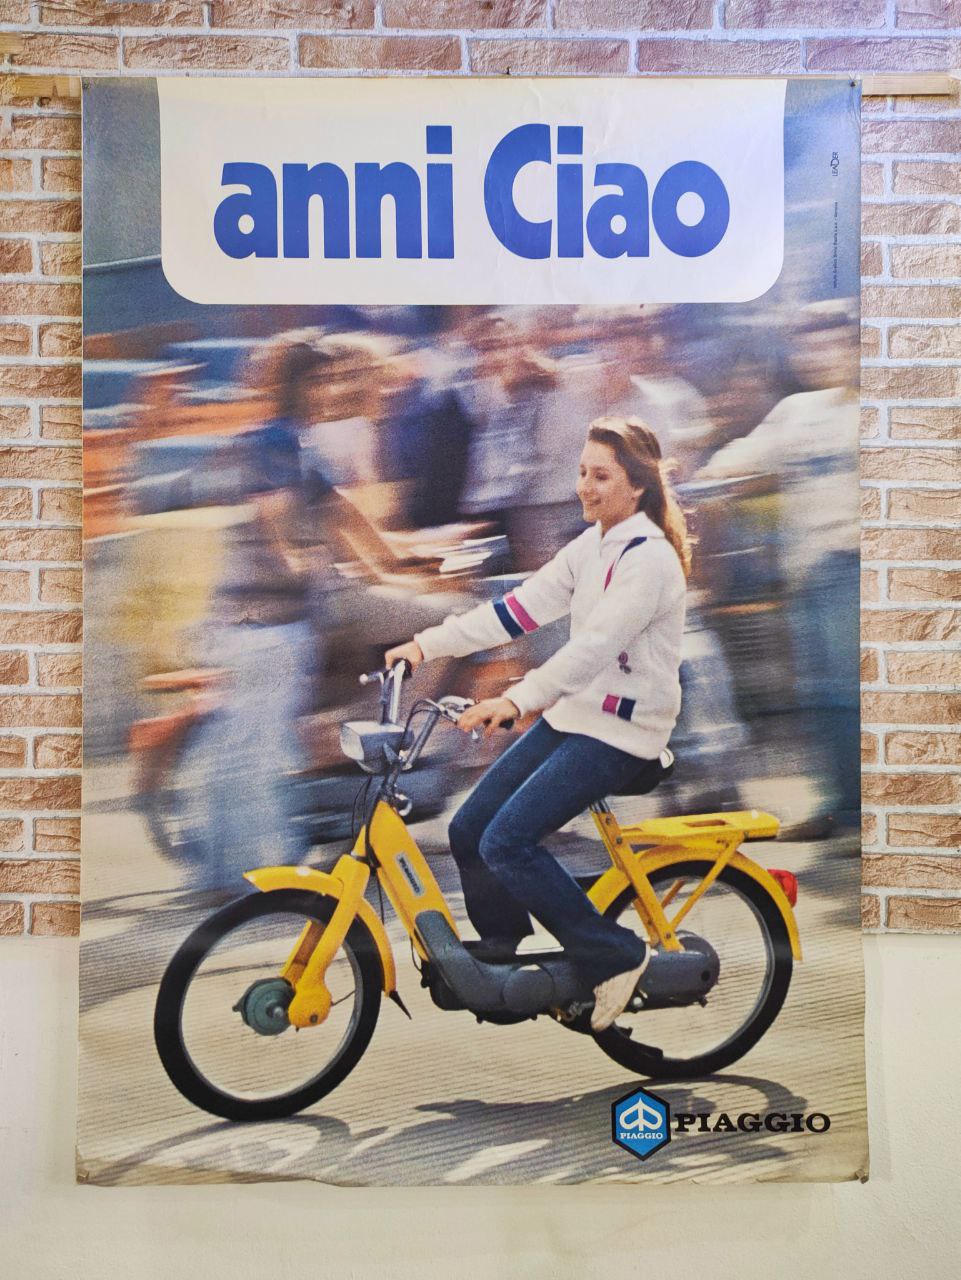 Manifesto originale pubblicitario - Piaggio anni Ciao